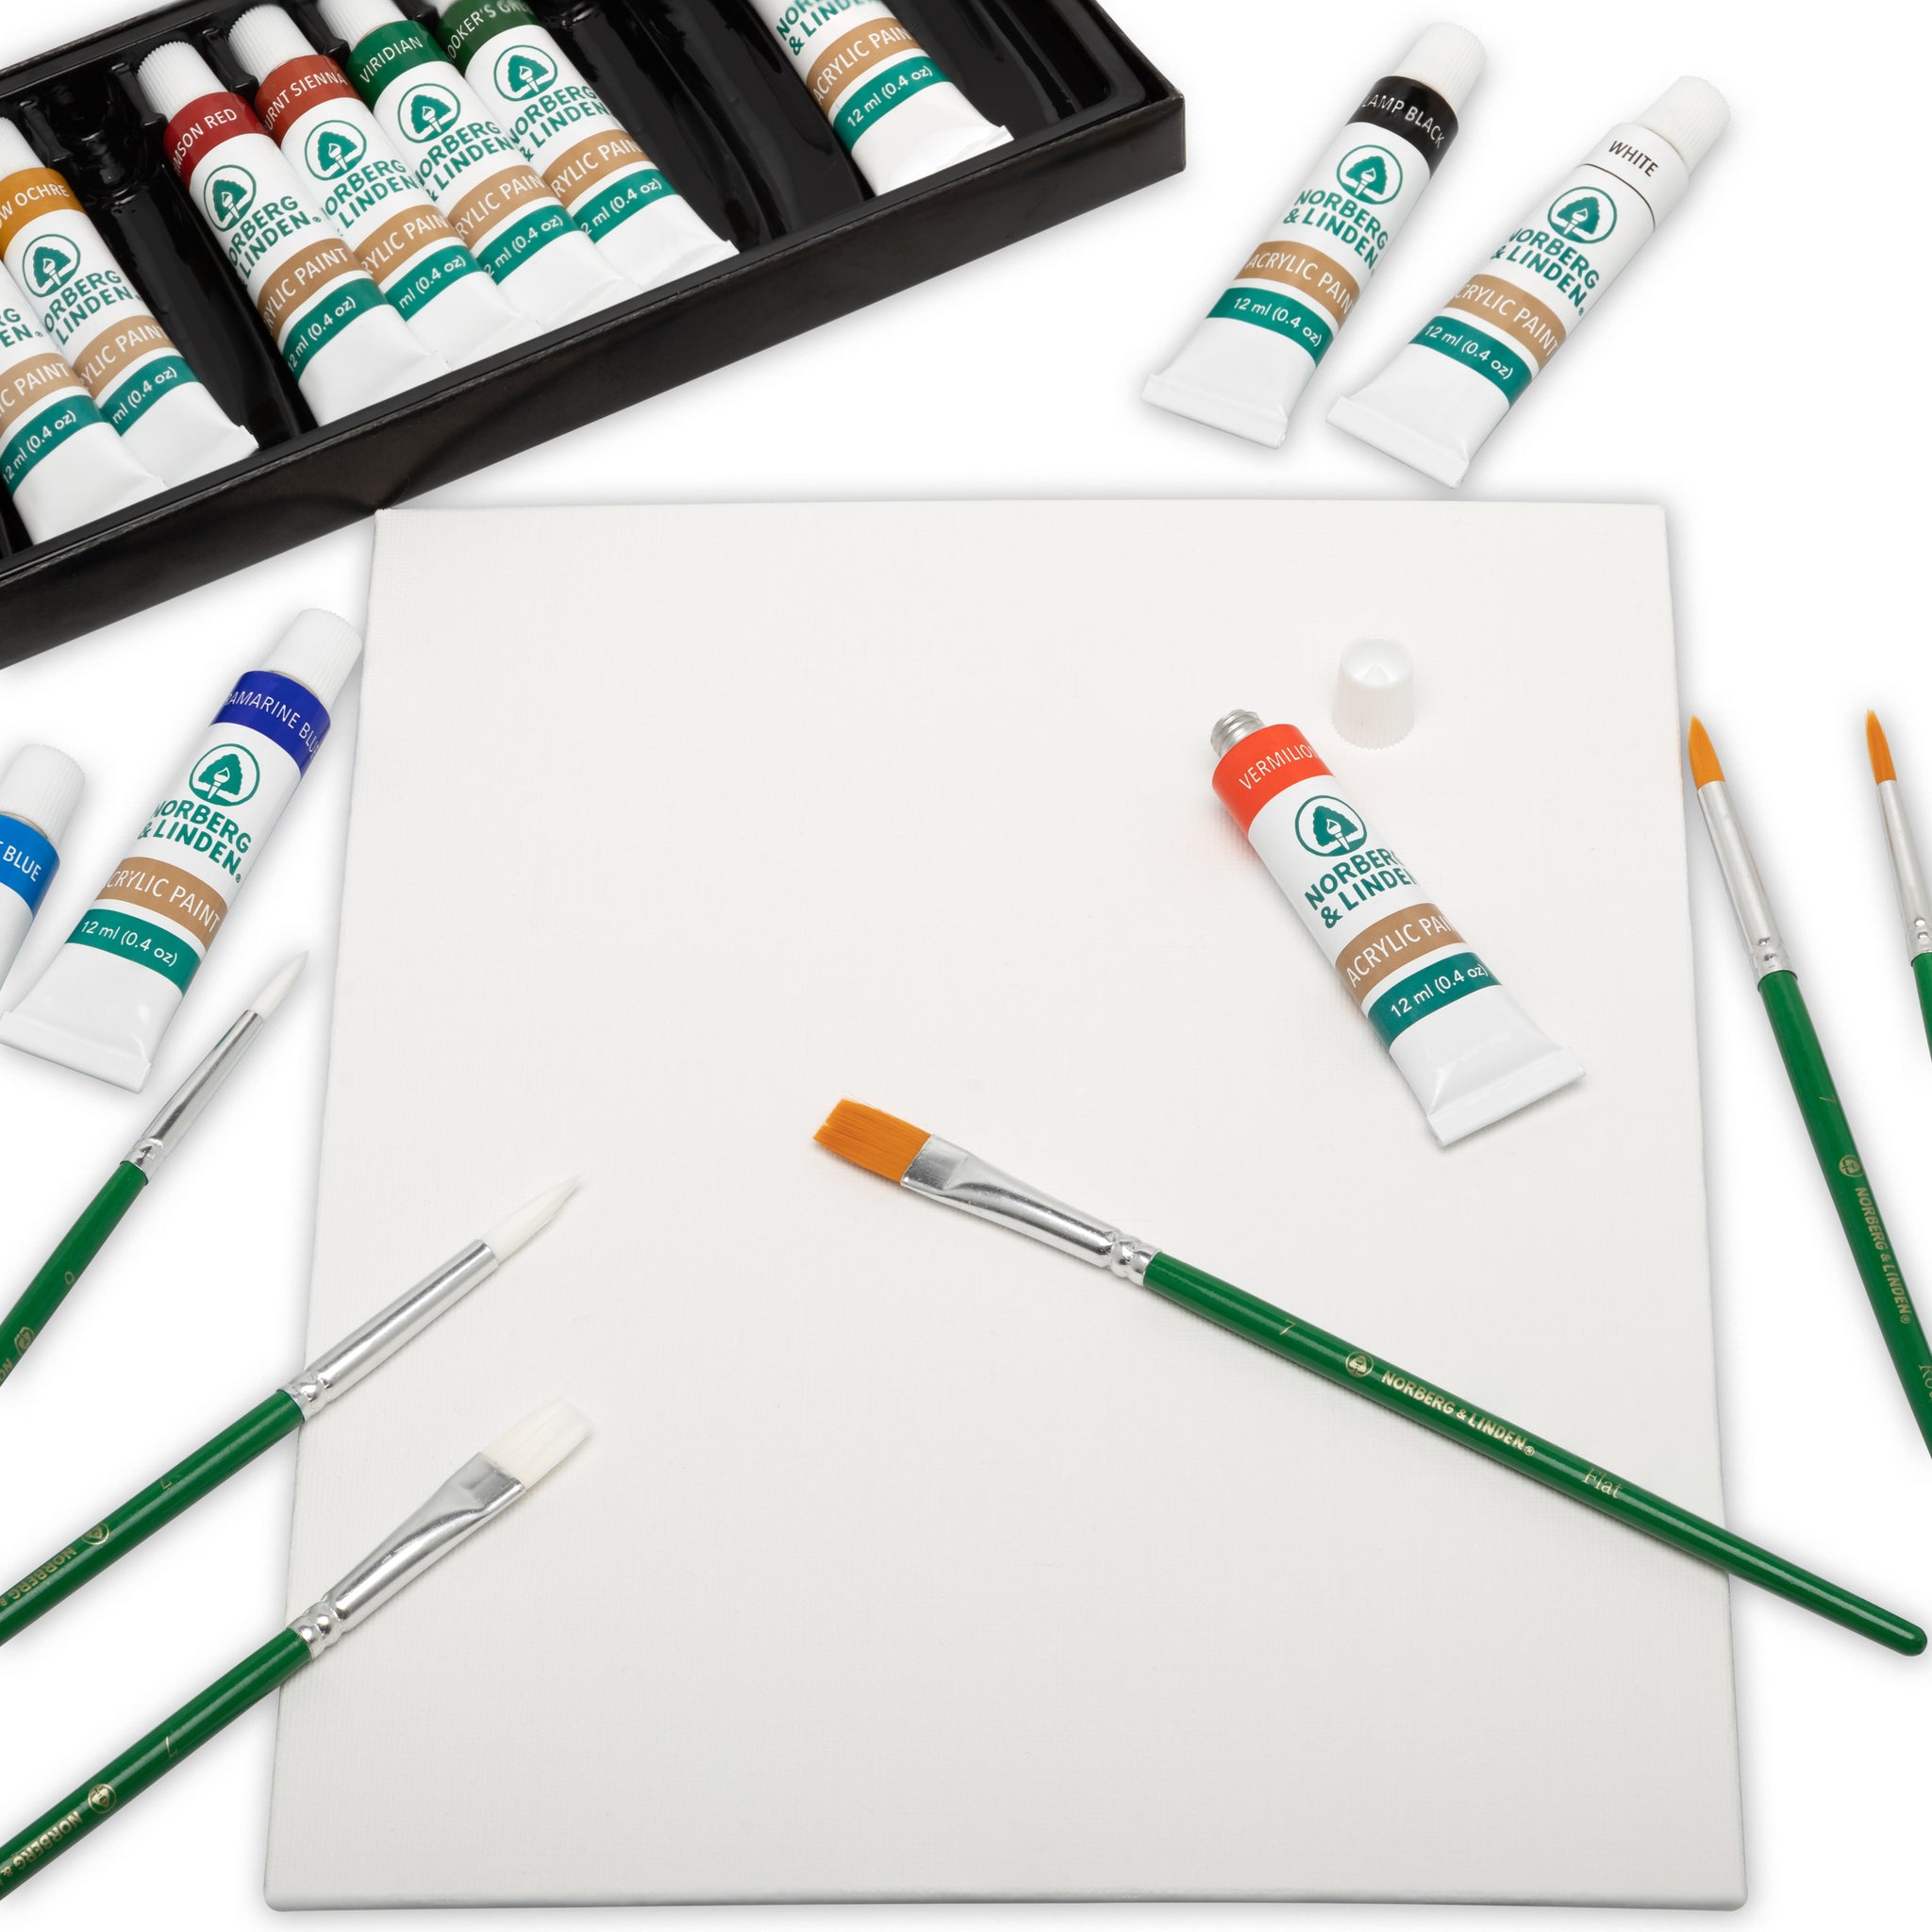 6 Color/12 Color Acrylic Paint with Paintbrush Washable Paint Set